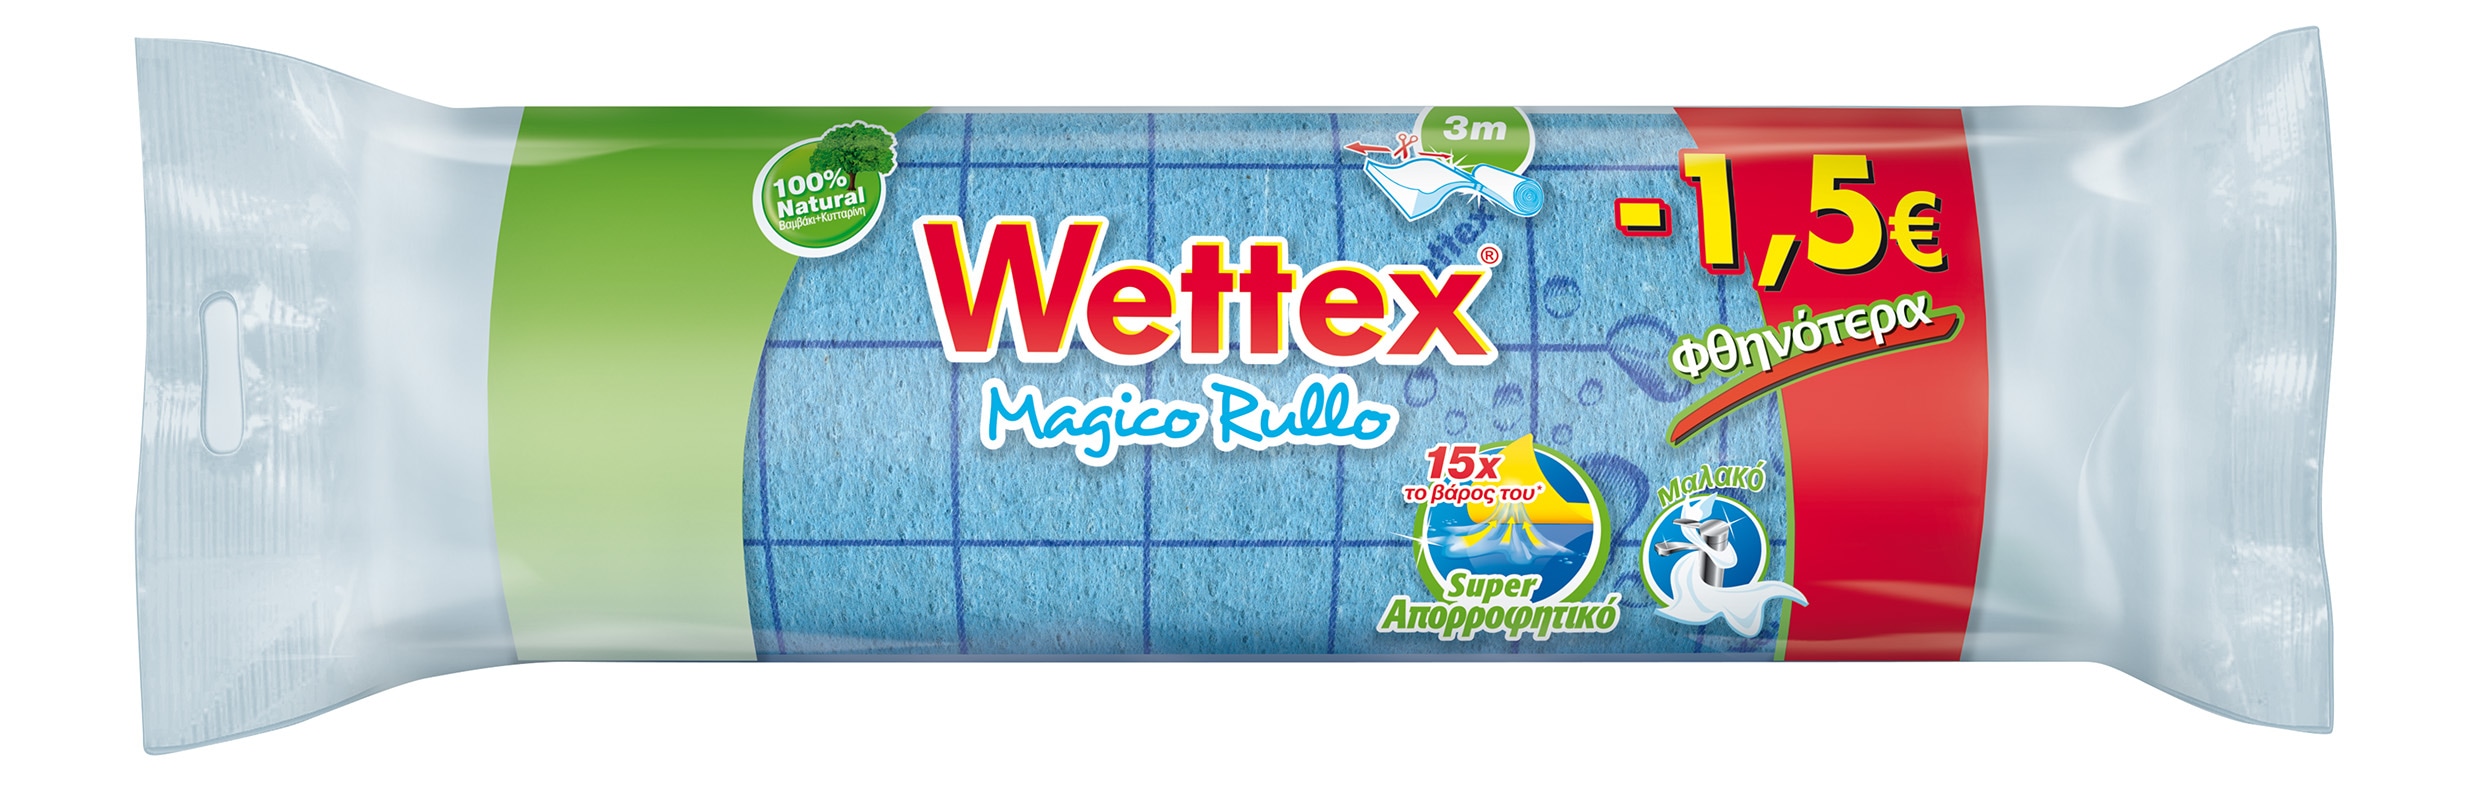 166964_Wettex_magico rullo_3m-1,5€ - Copy.jpg